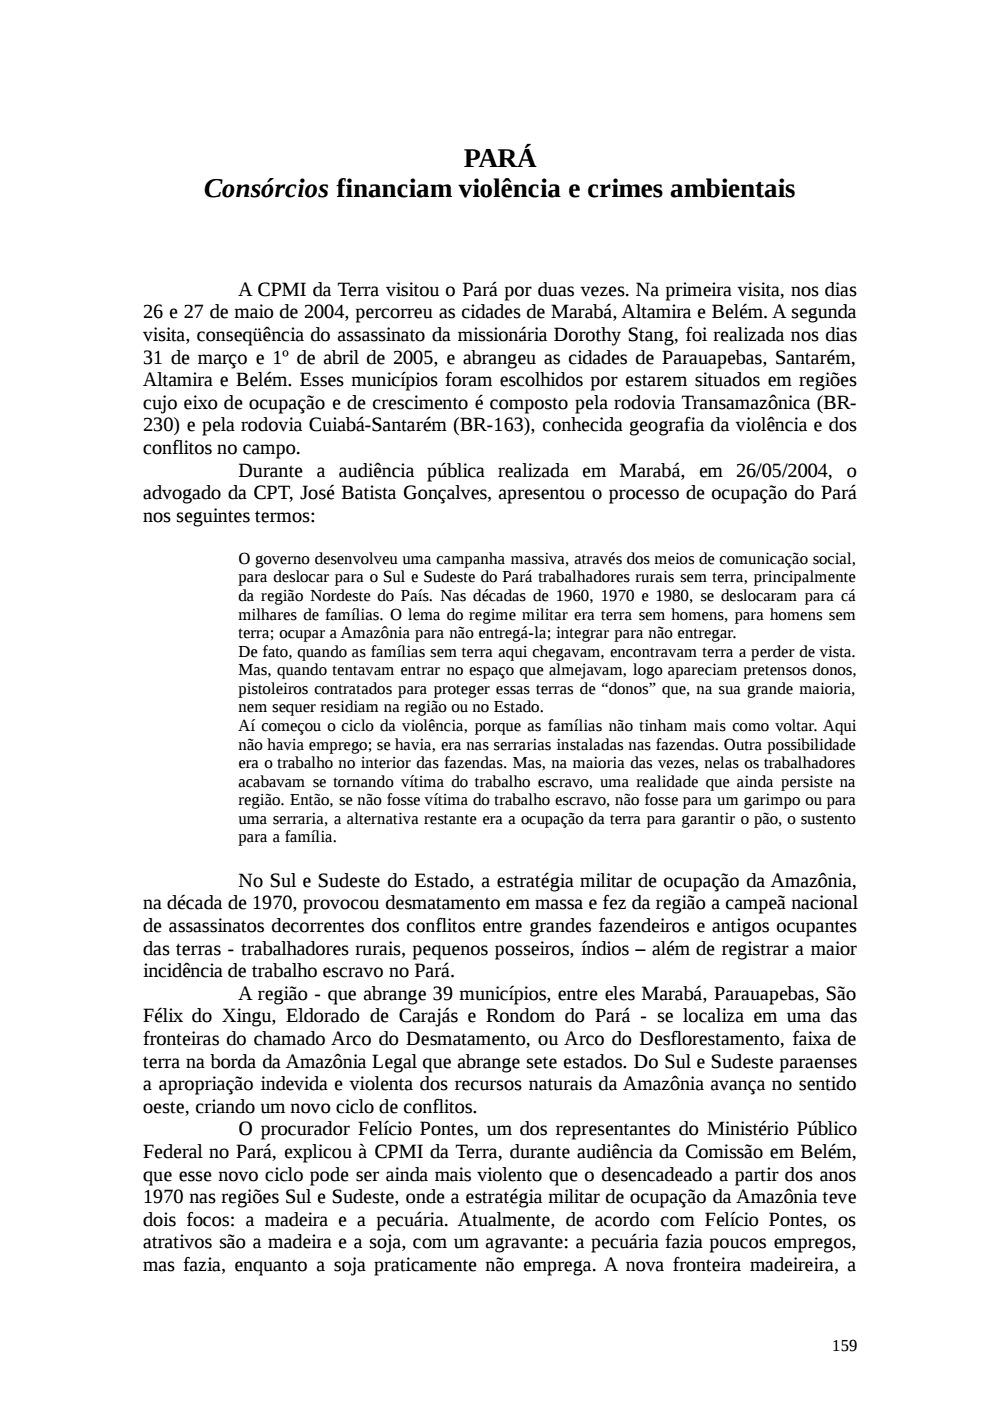 Page 159 from Relatório final da comissão